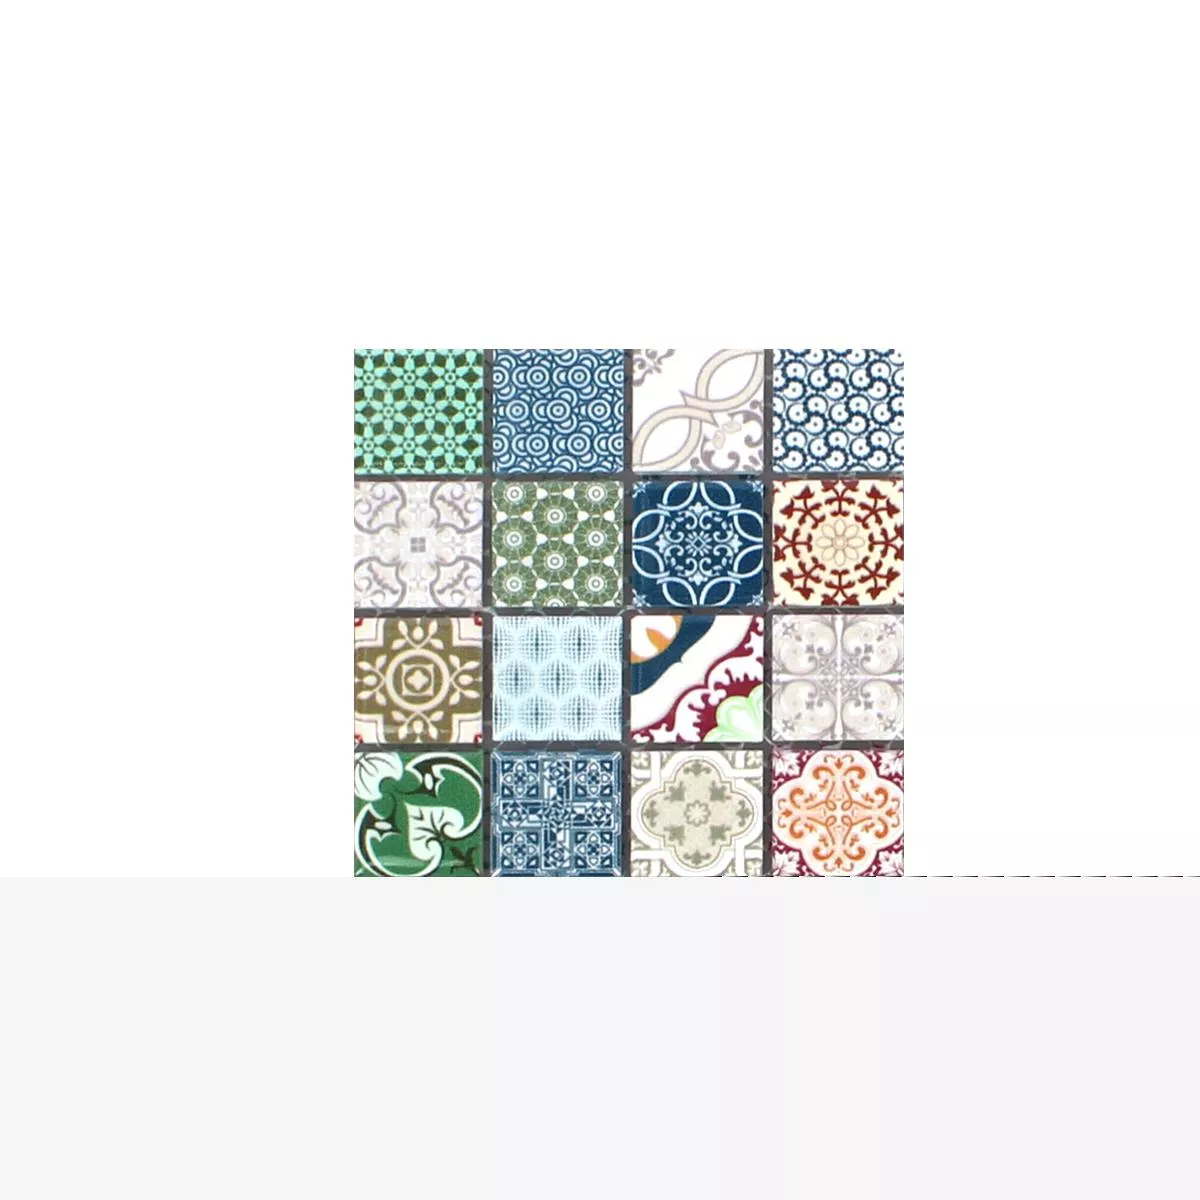 Sample Mosaic Tiles Ceramic Dia Retro